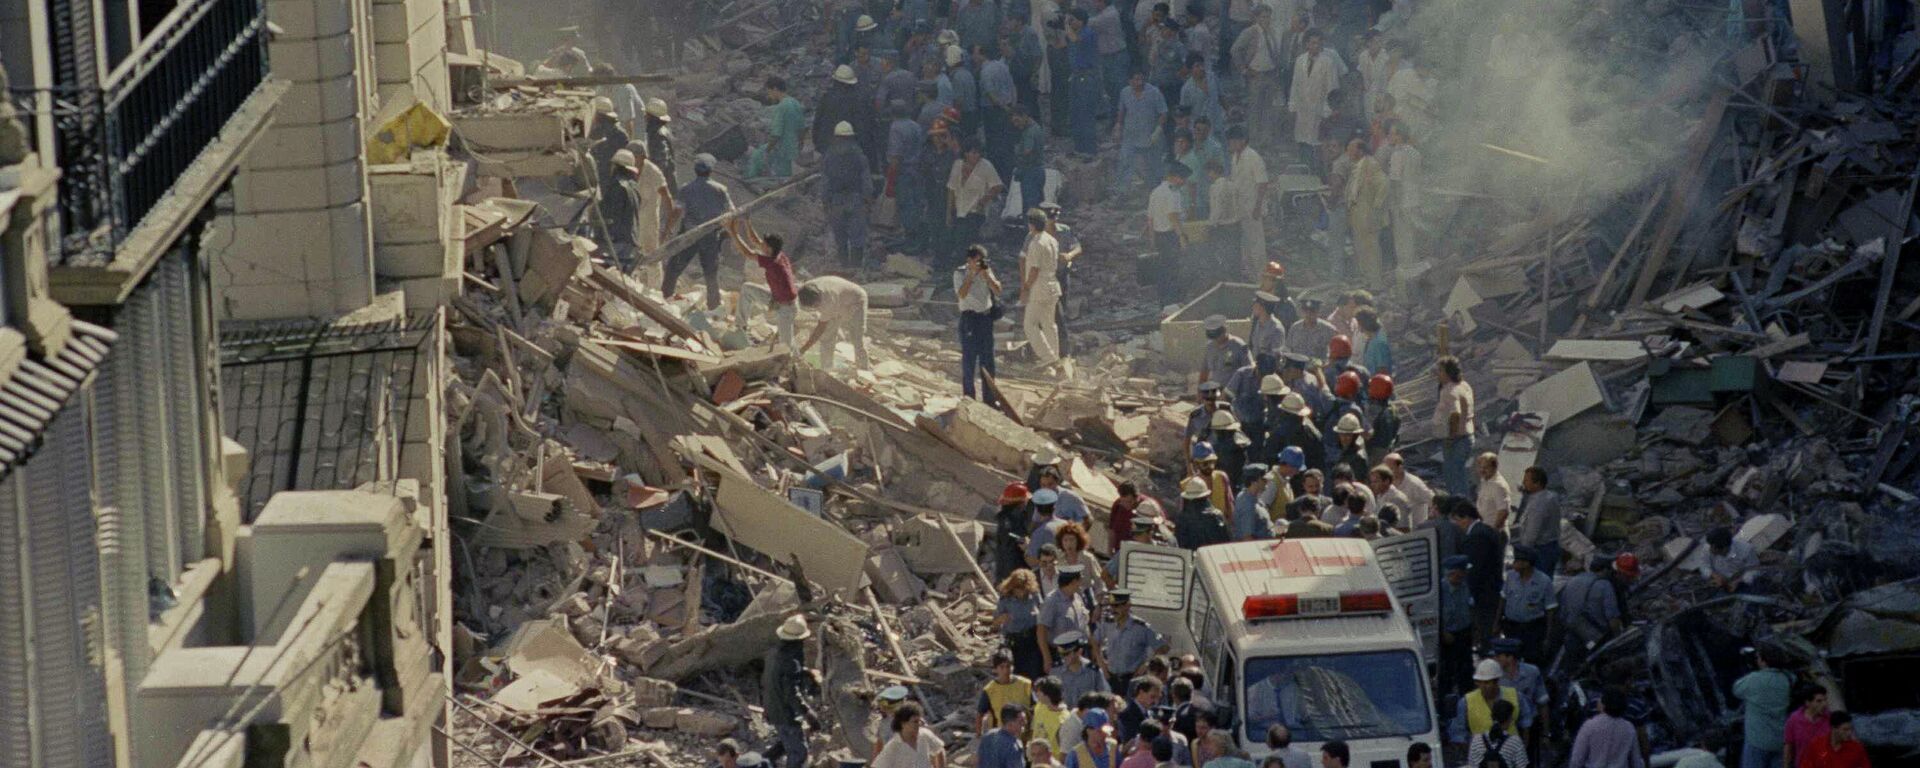 Trabajos de rescate luego del atentado a la Embajada de Israel en Argentina, 1992 - Sputnik Mundo, 1920, 17.03.2021